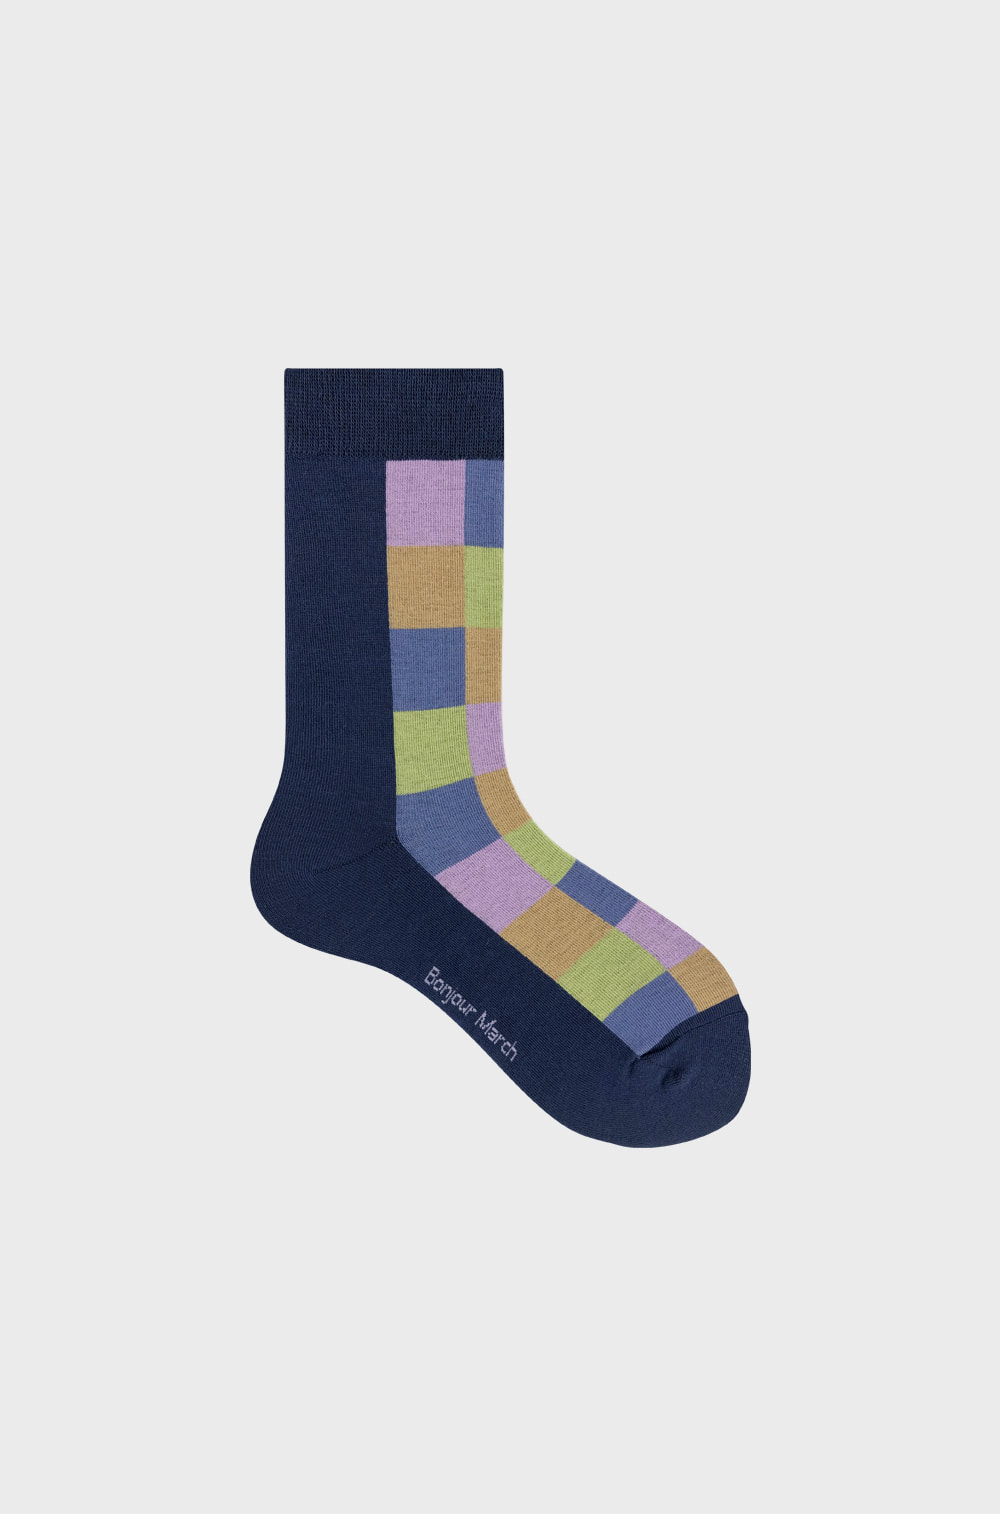 Square socks_navy